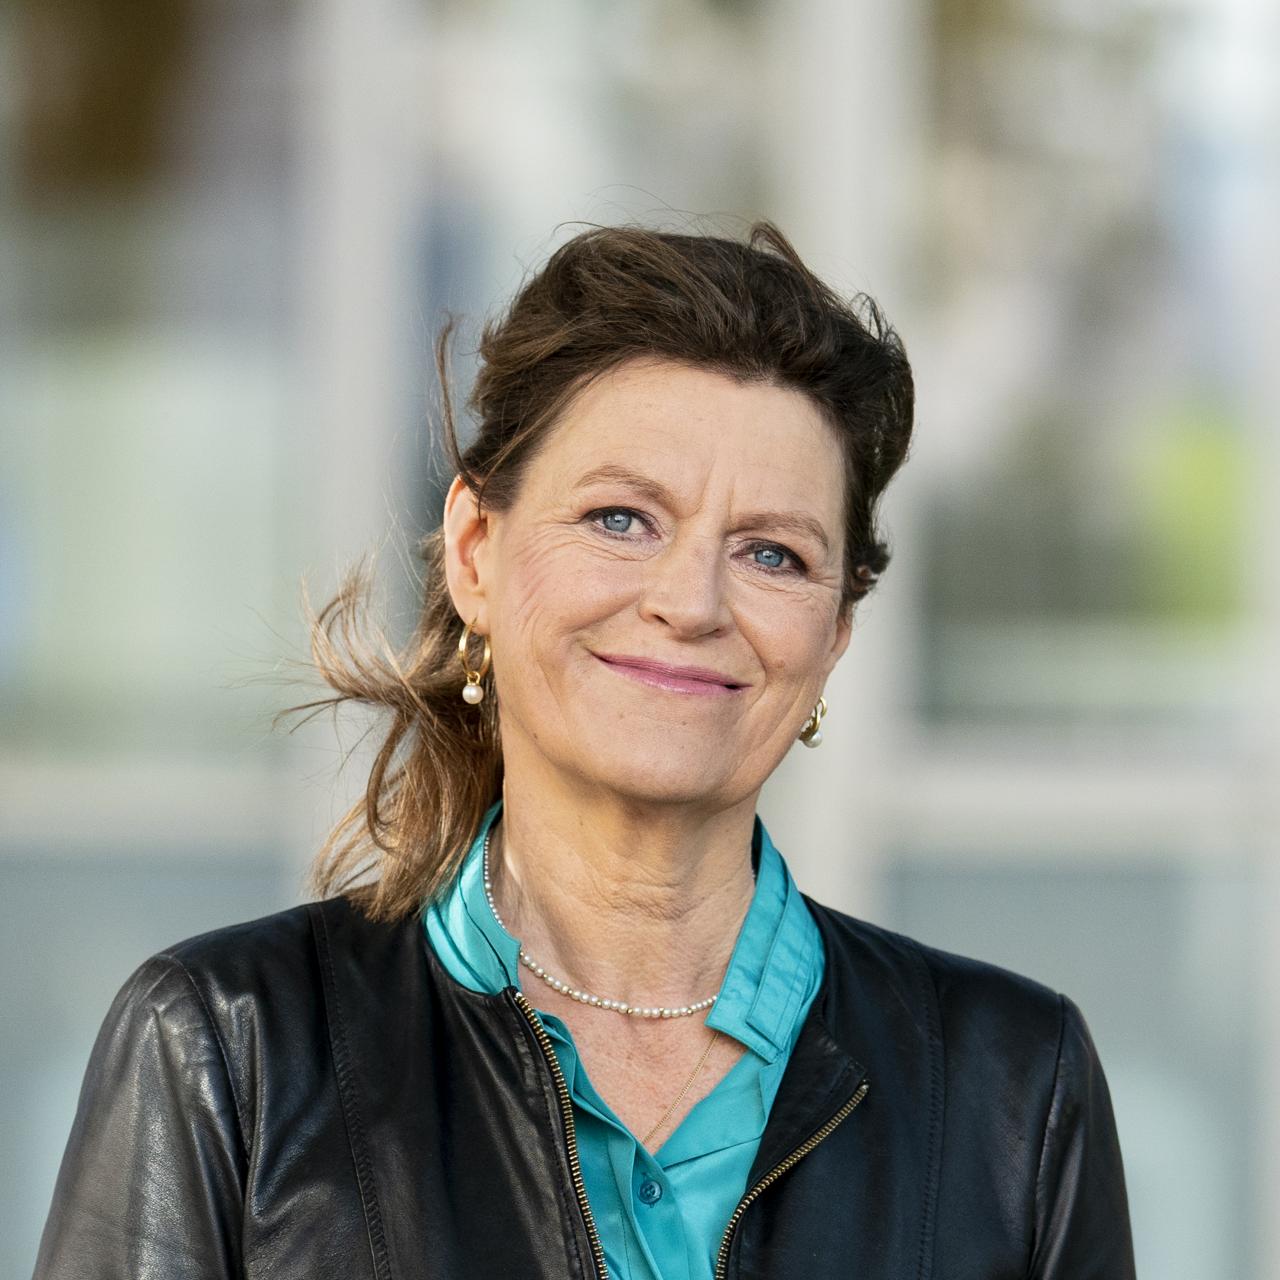 Margrite Kalverboer, Ombudsman for Children